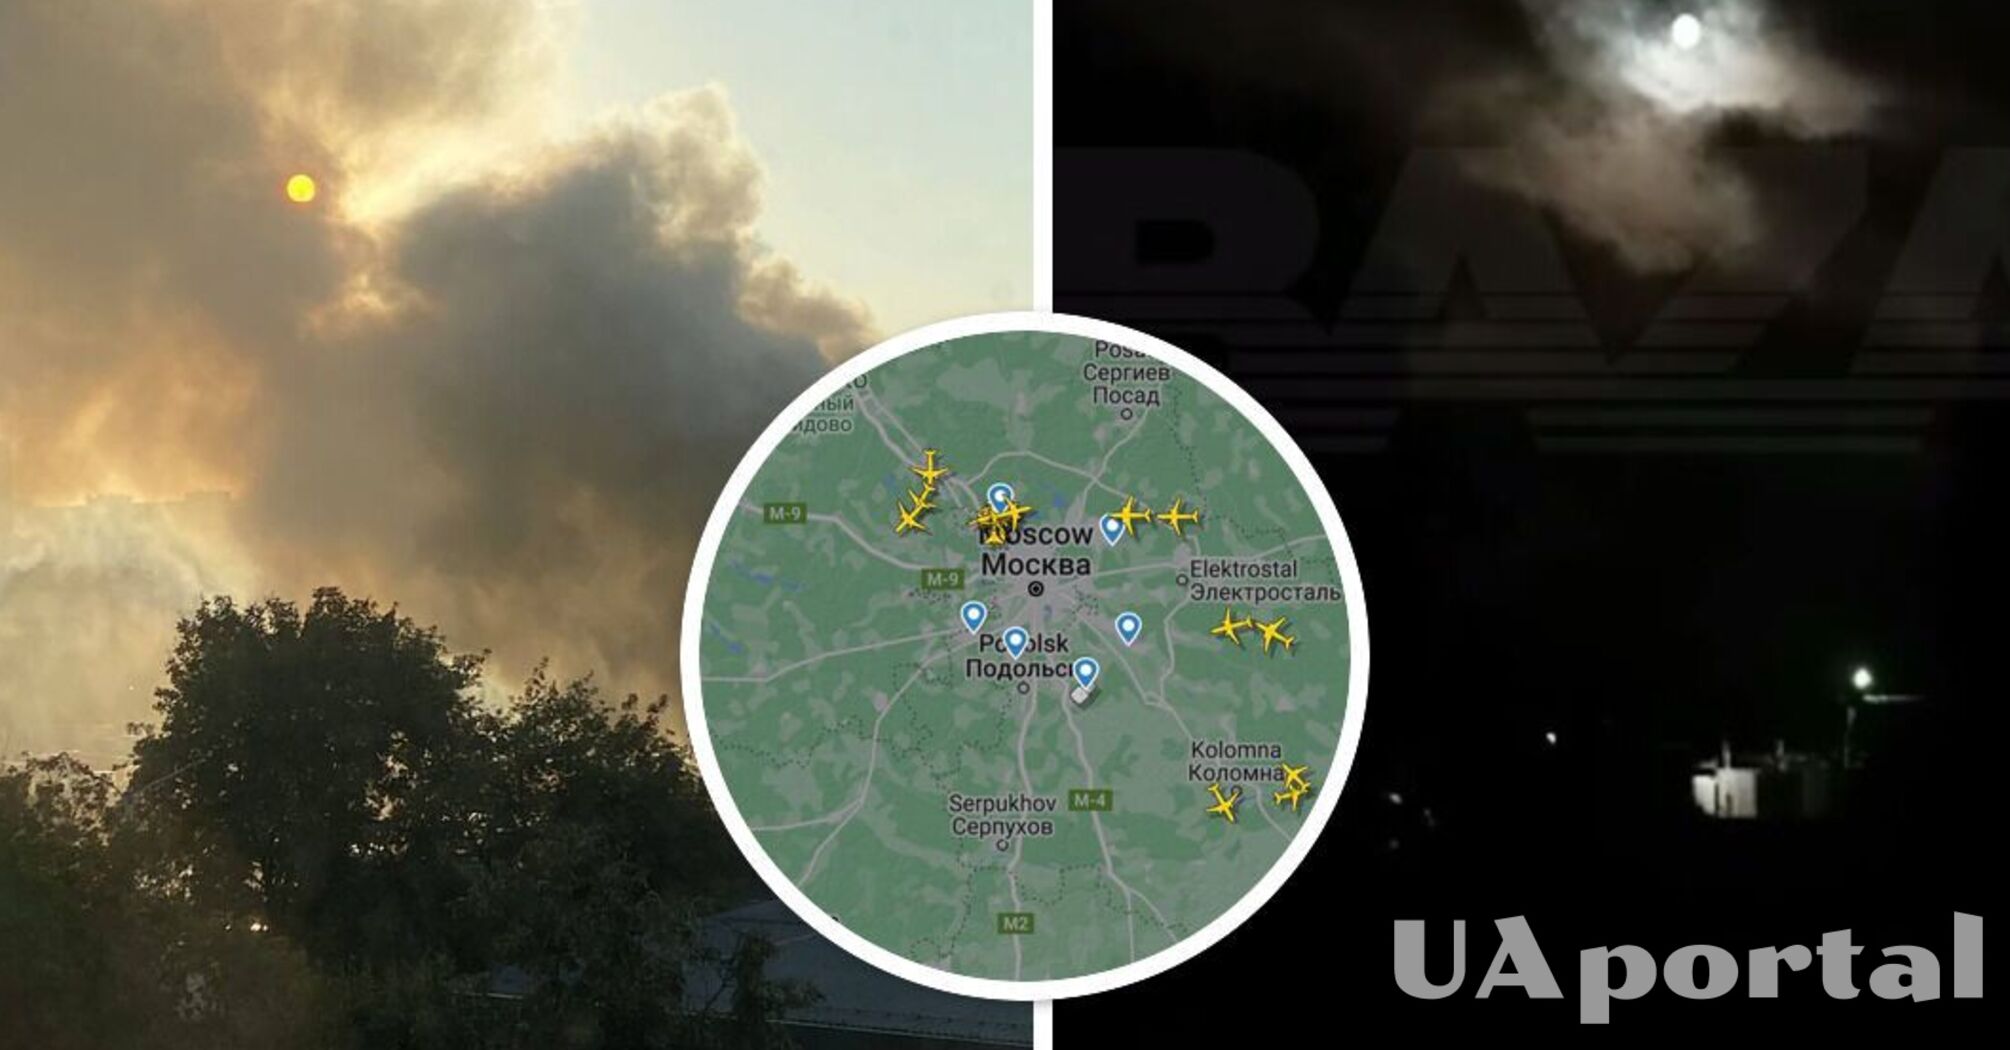 Після атаки безпілотників під Москвою спалахнула пожежа: відео